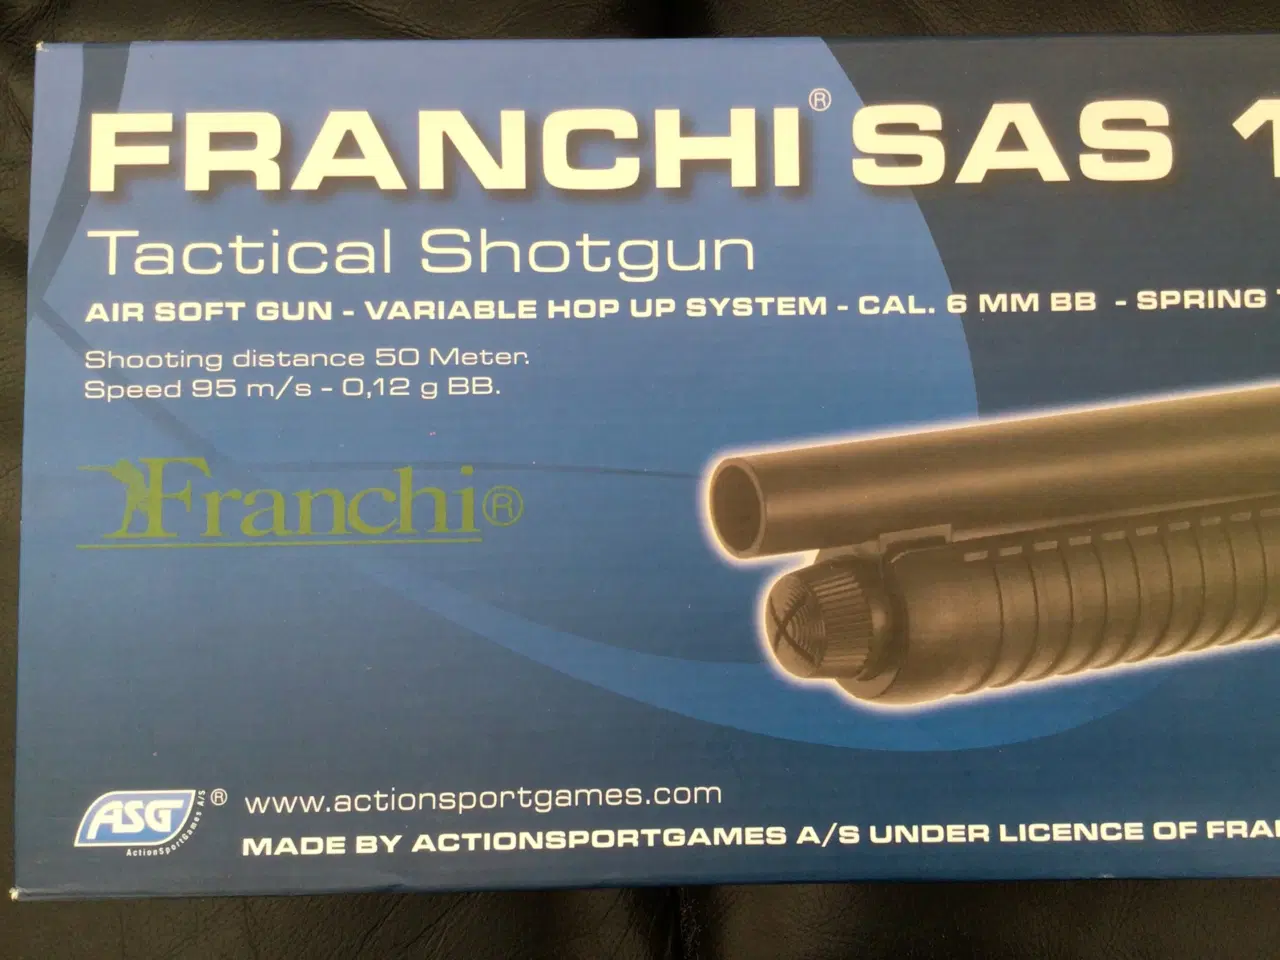 Billede 5 - Franchi sas 12 Air soft gun